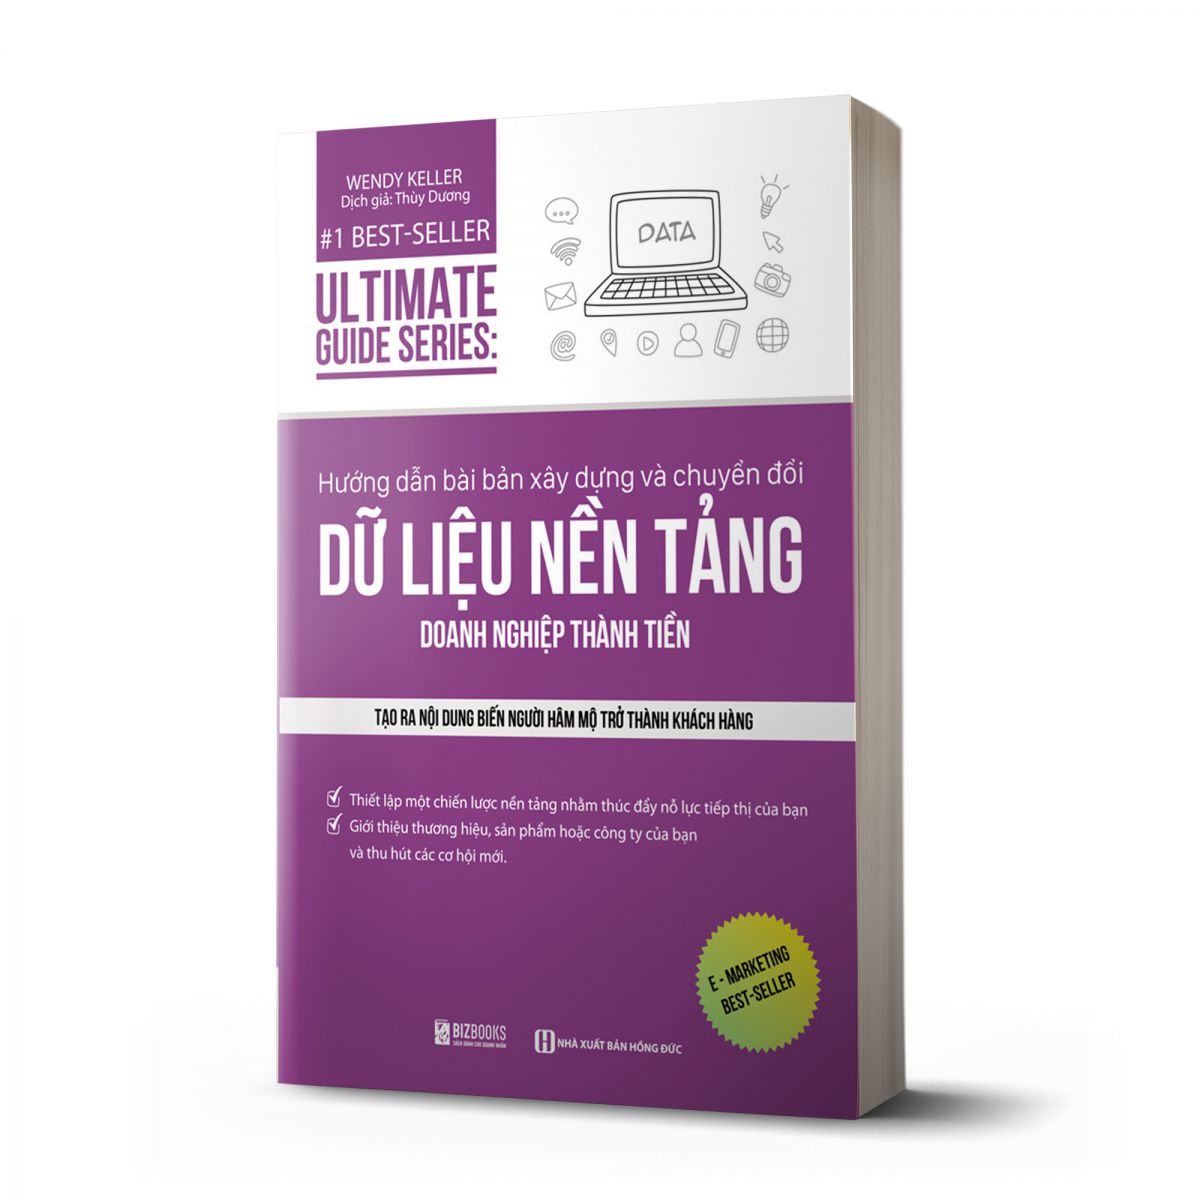 Ultimate Guide Series: Hướng dẫn bài bản xây dựng về chuyển đổi dữ liệu nền tảng doanh nghiệp thành tiền 1